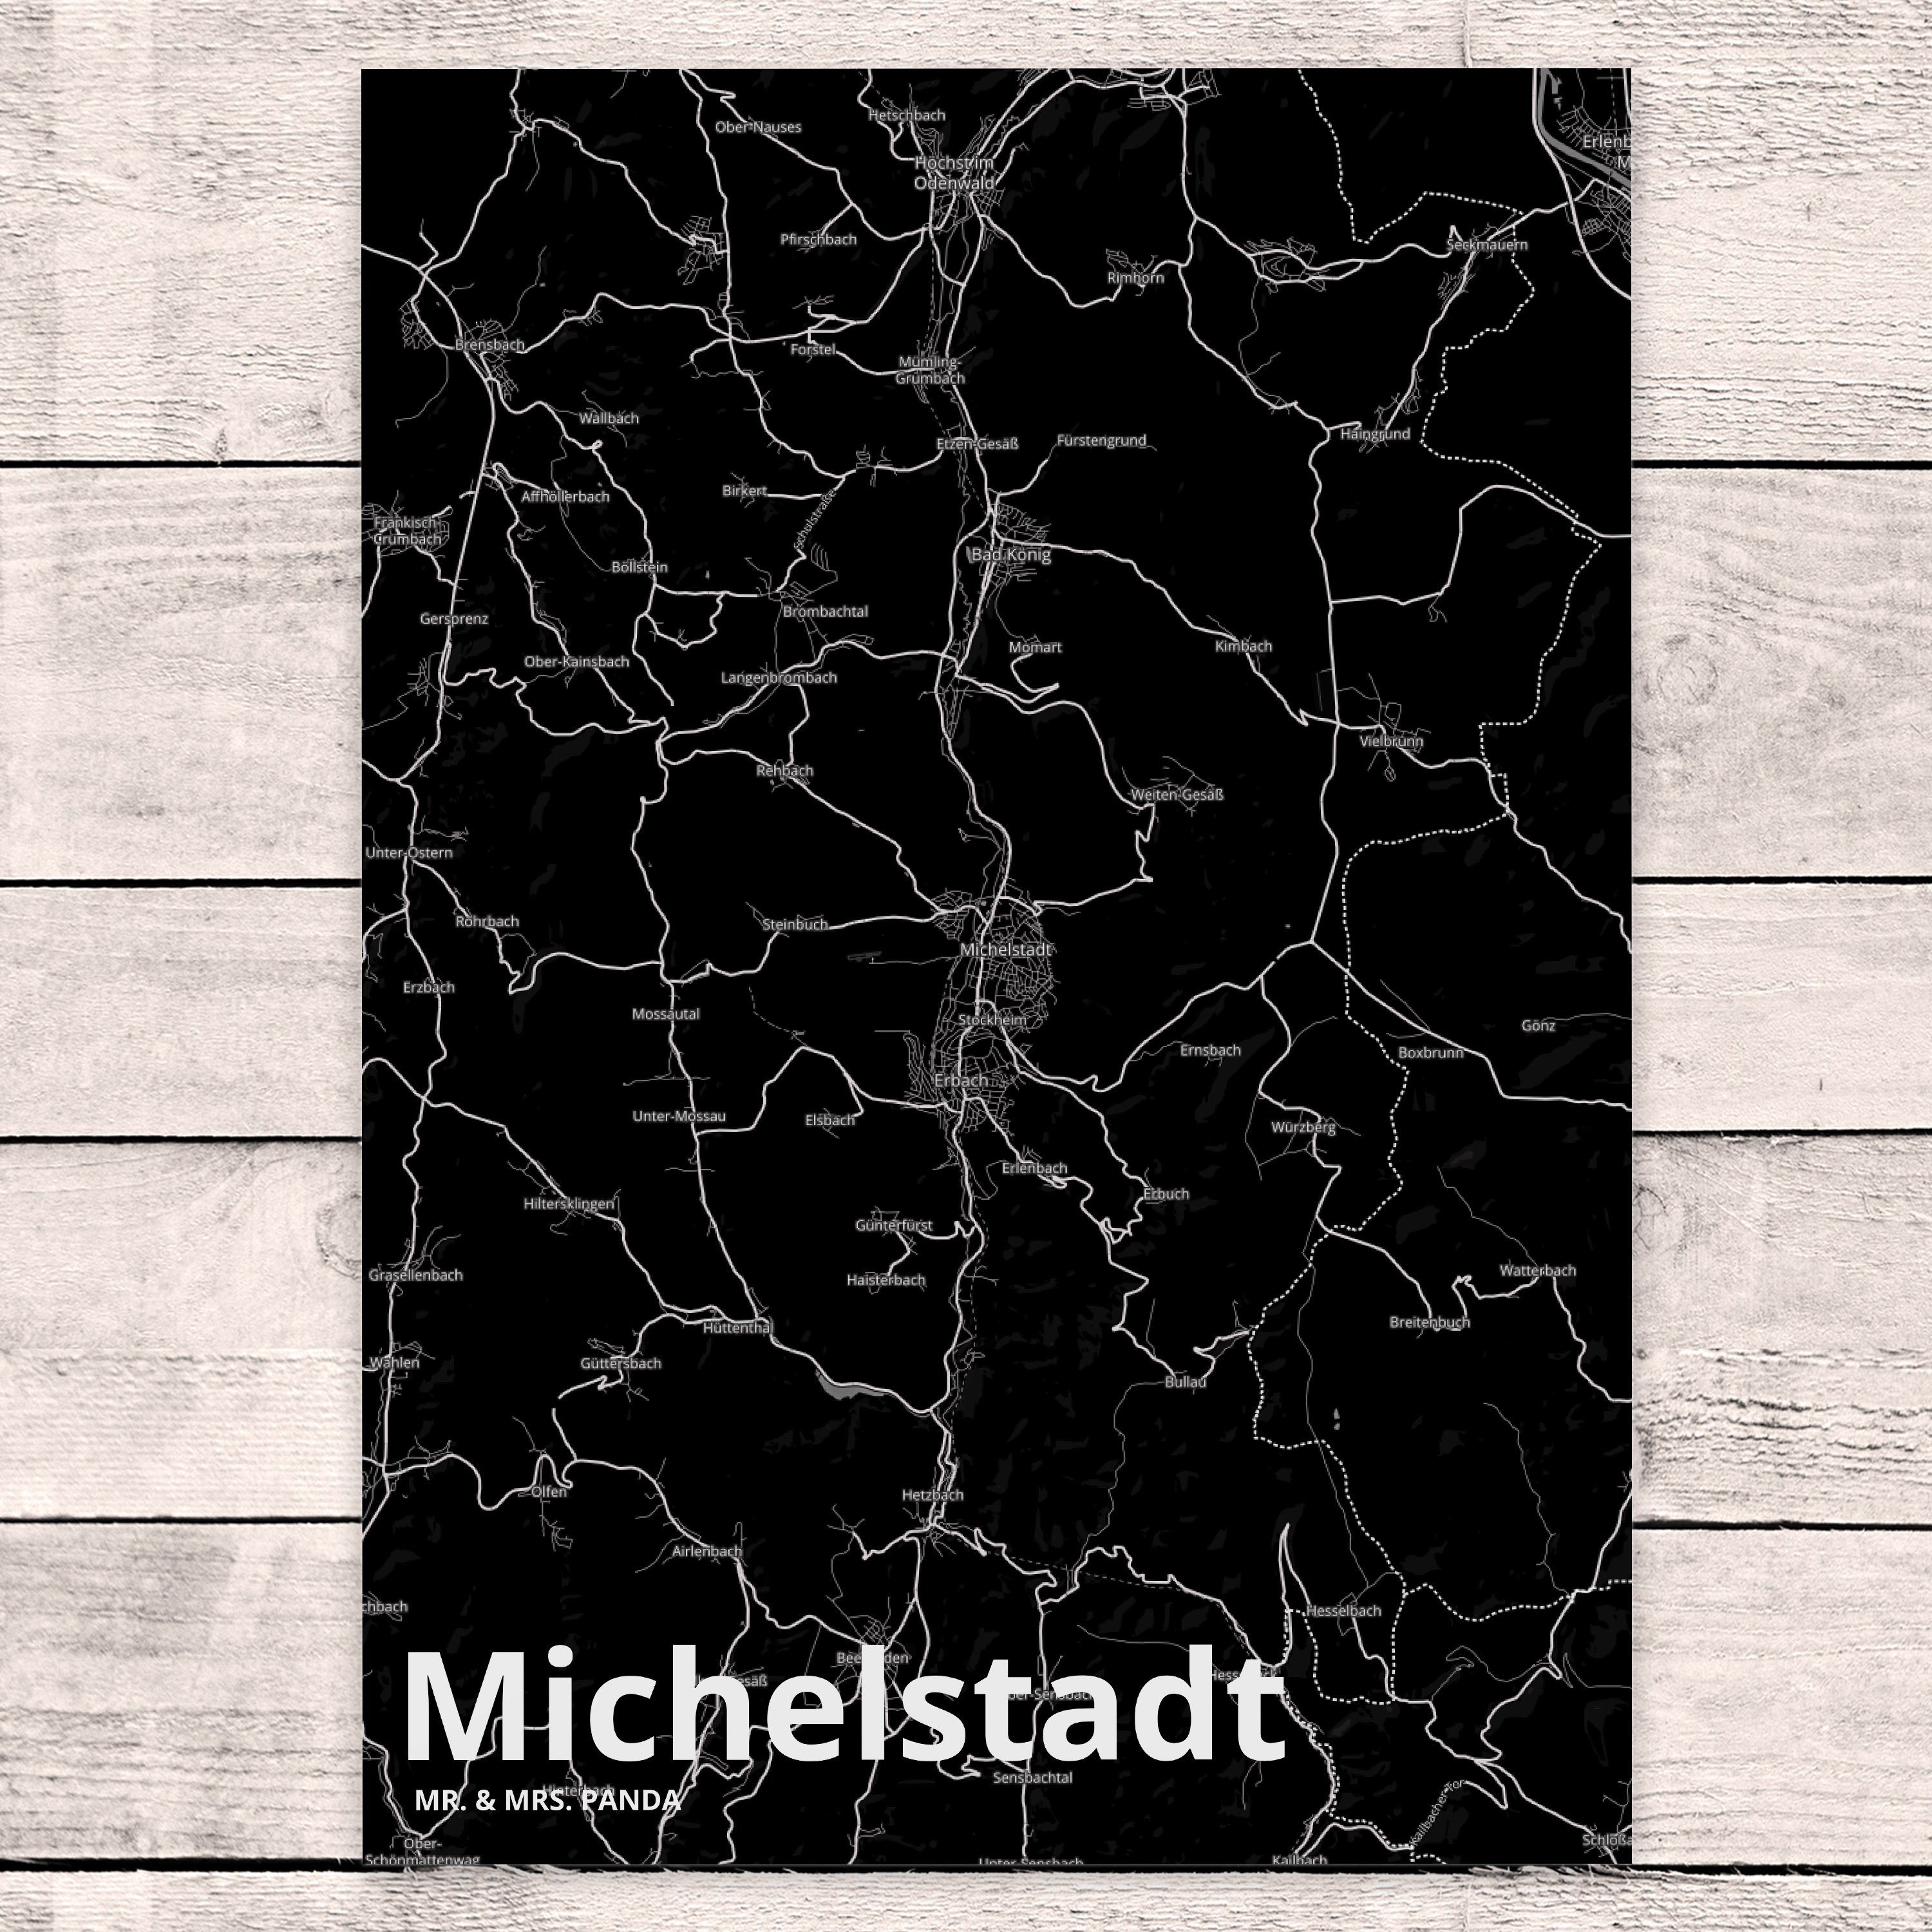 Michelstadt Gr Mr. & - Geschenk, Panda Einladung, Dorf, Städte, Postkarte Mrs. Geburtstagskarte,